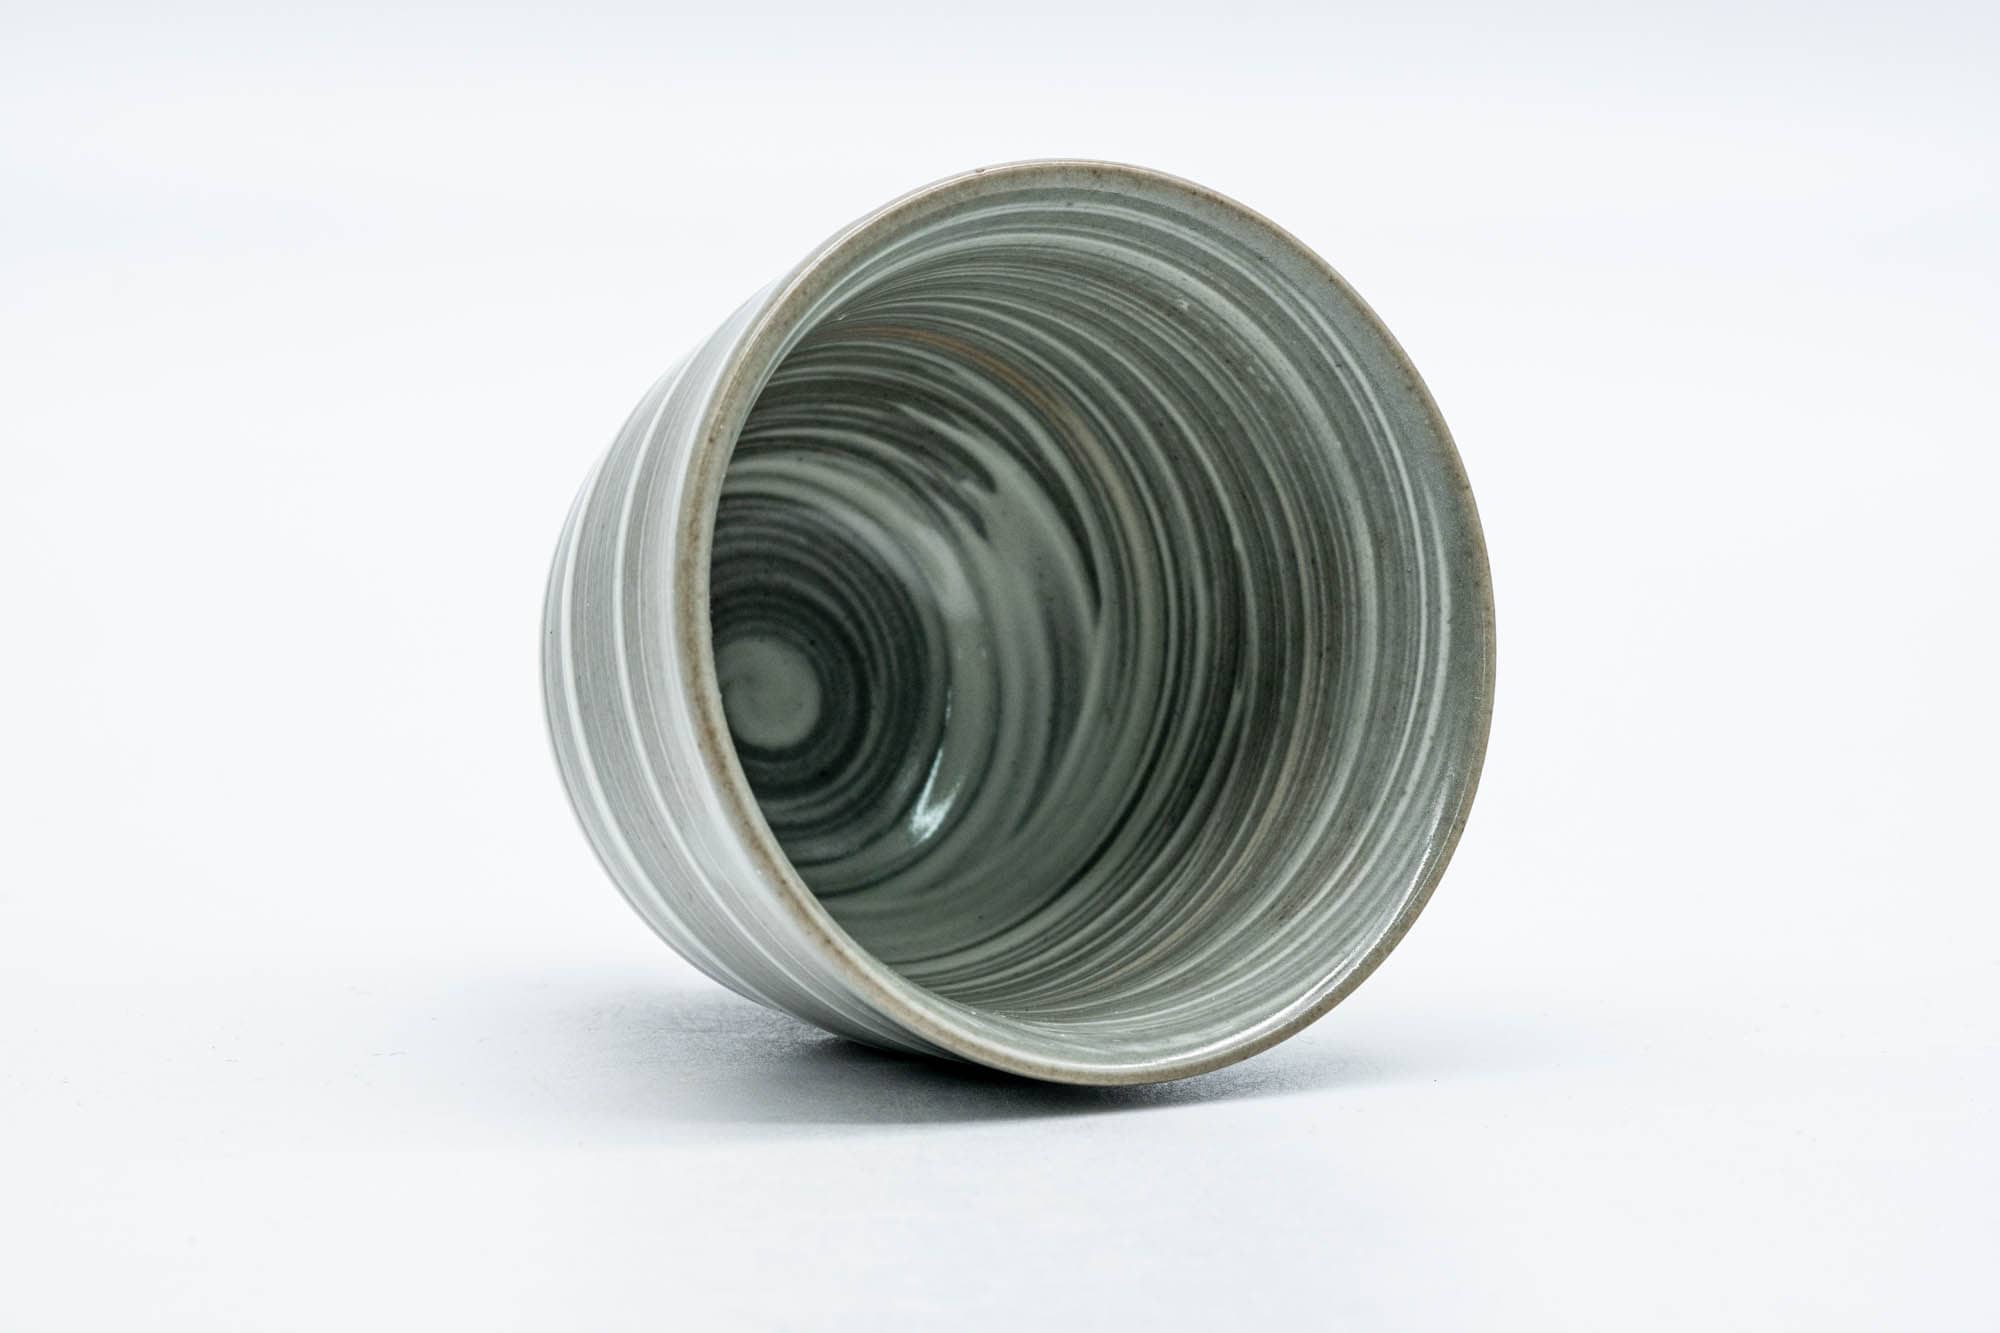 Japanese Teacup - Spiraling Grey White Glazed Yunomi - 130ml